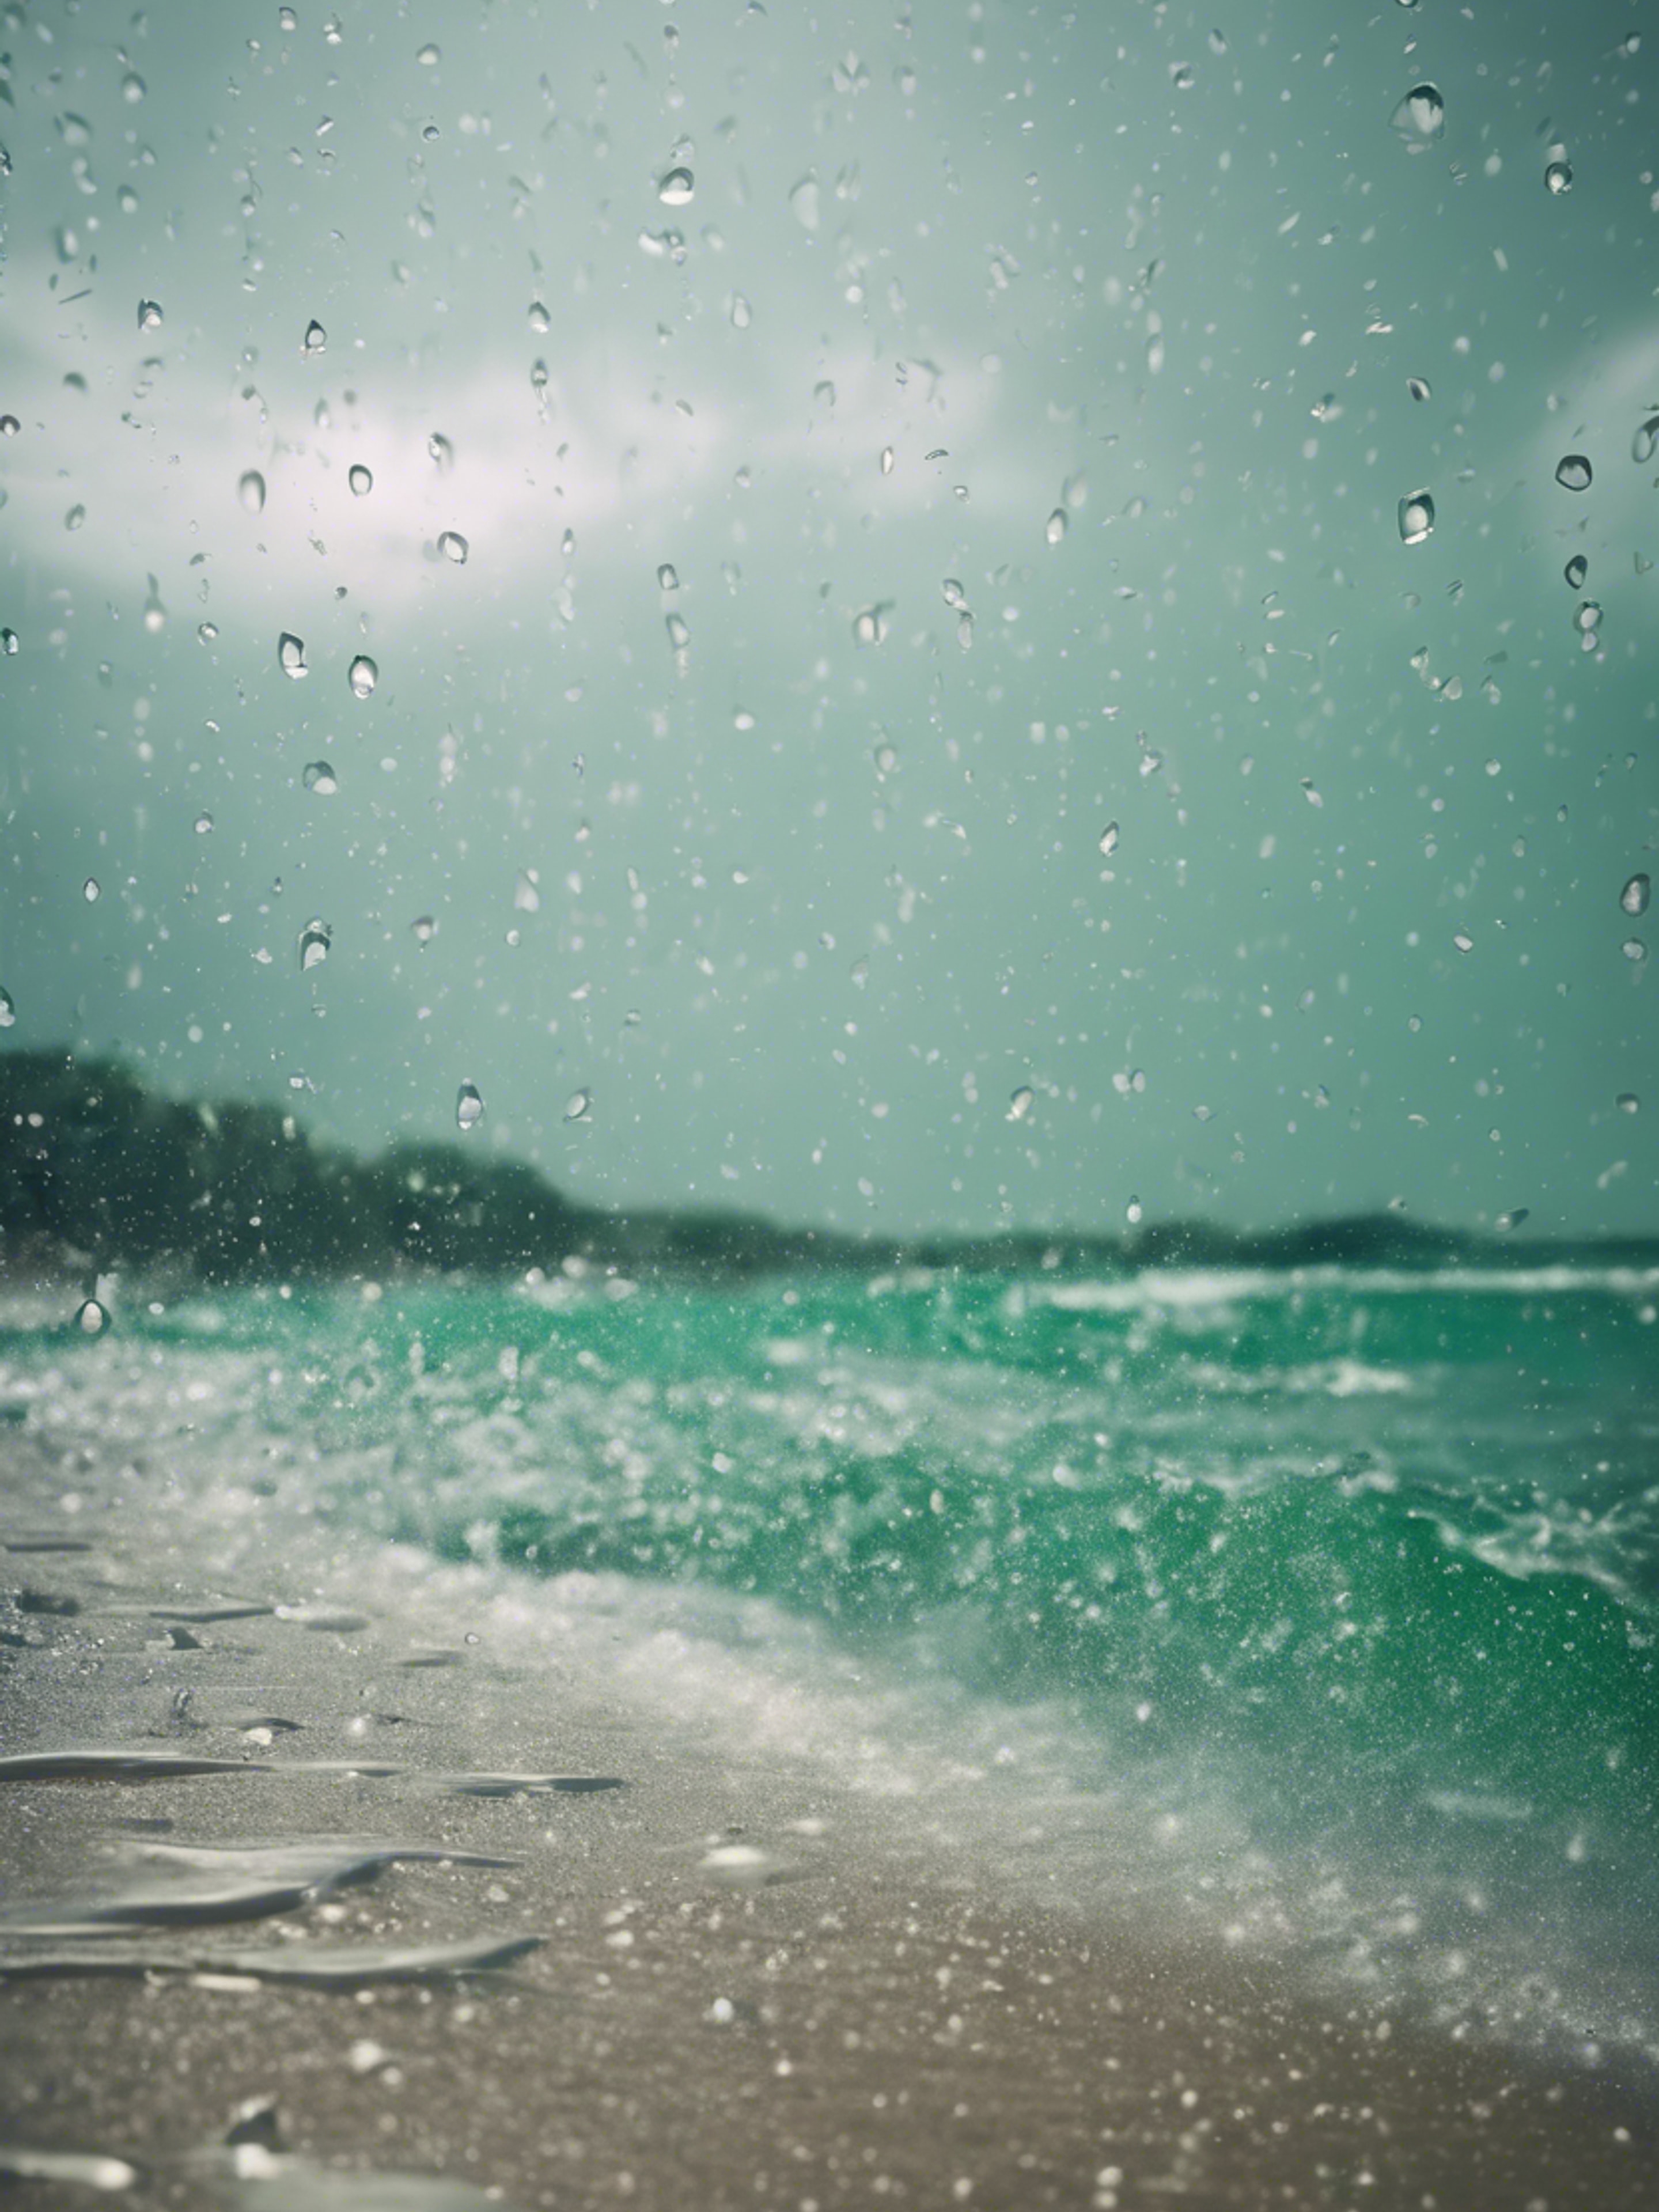 A tropical beach during a heavy downpour, raindrops peppering the emerald ocean surface. Wallpaper[12d3e55d32da4f6db703]